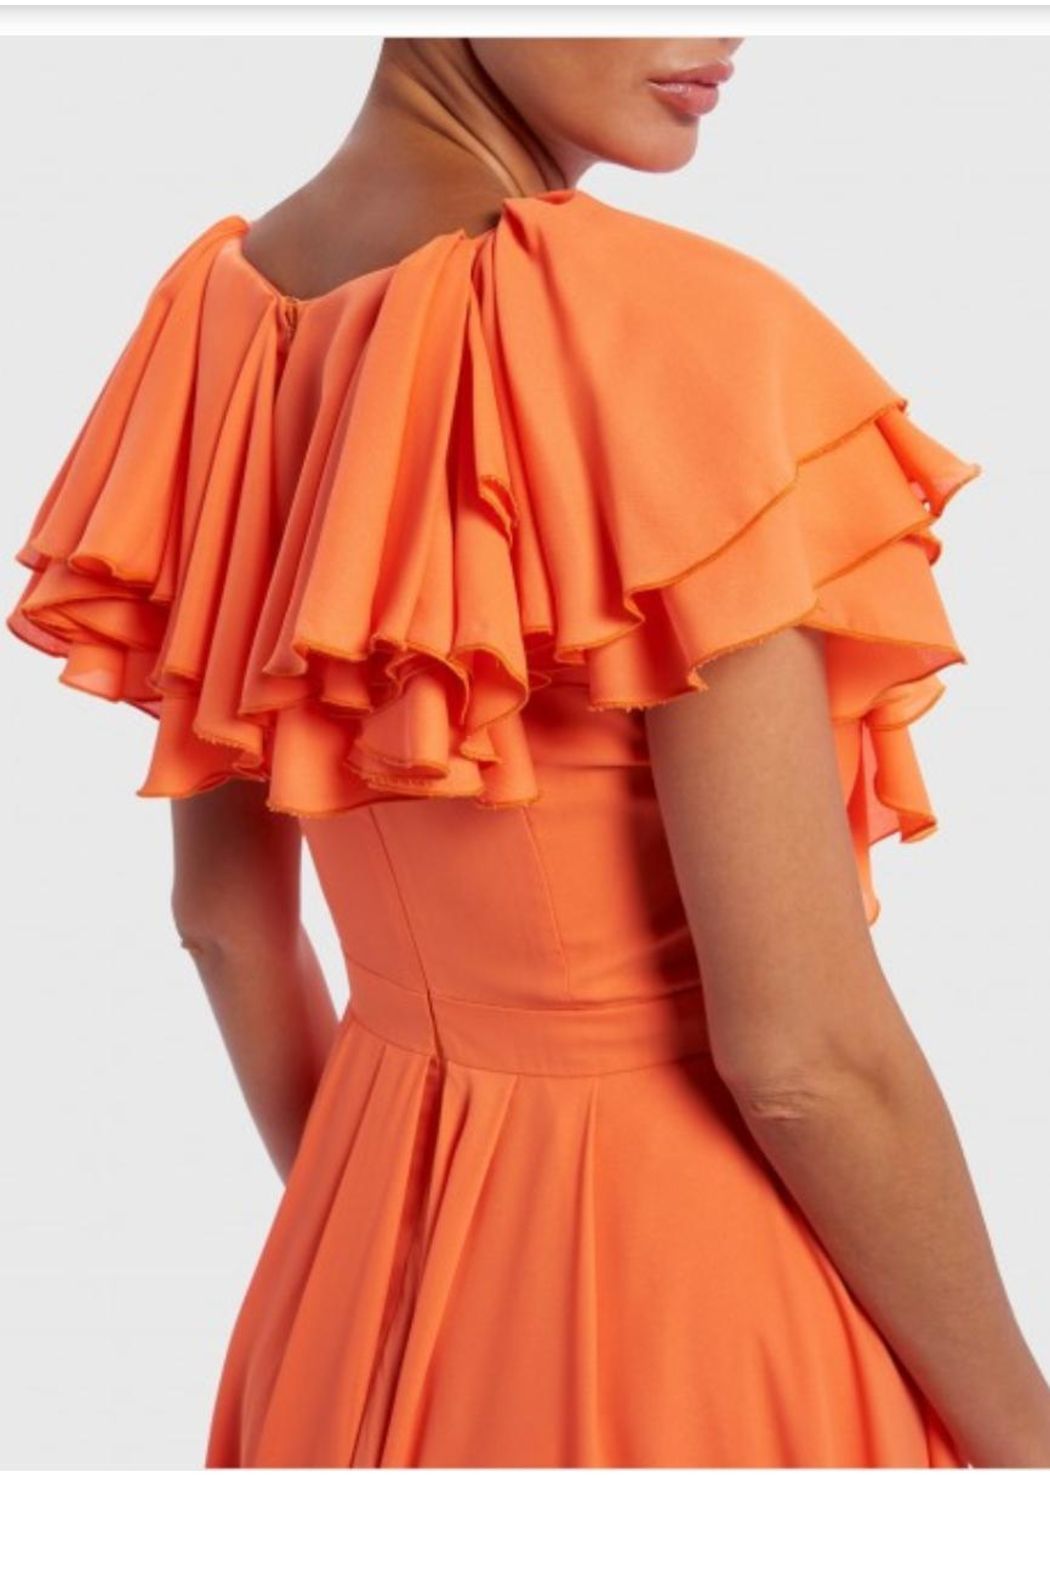 Style AF0117 Forever Unique Size 2 Prom Orange Side Slit Dress on Queenly